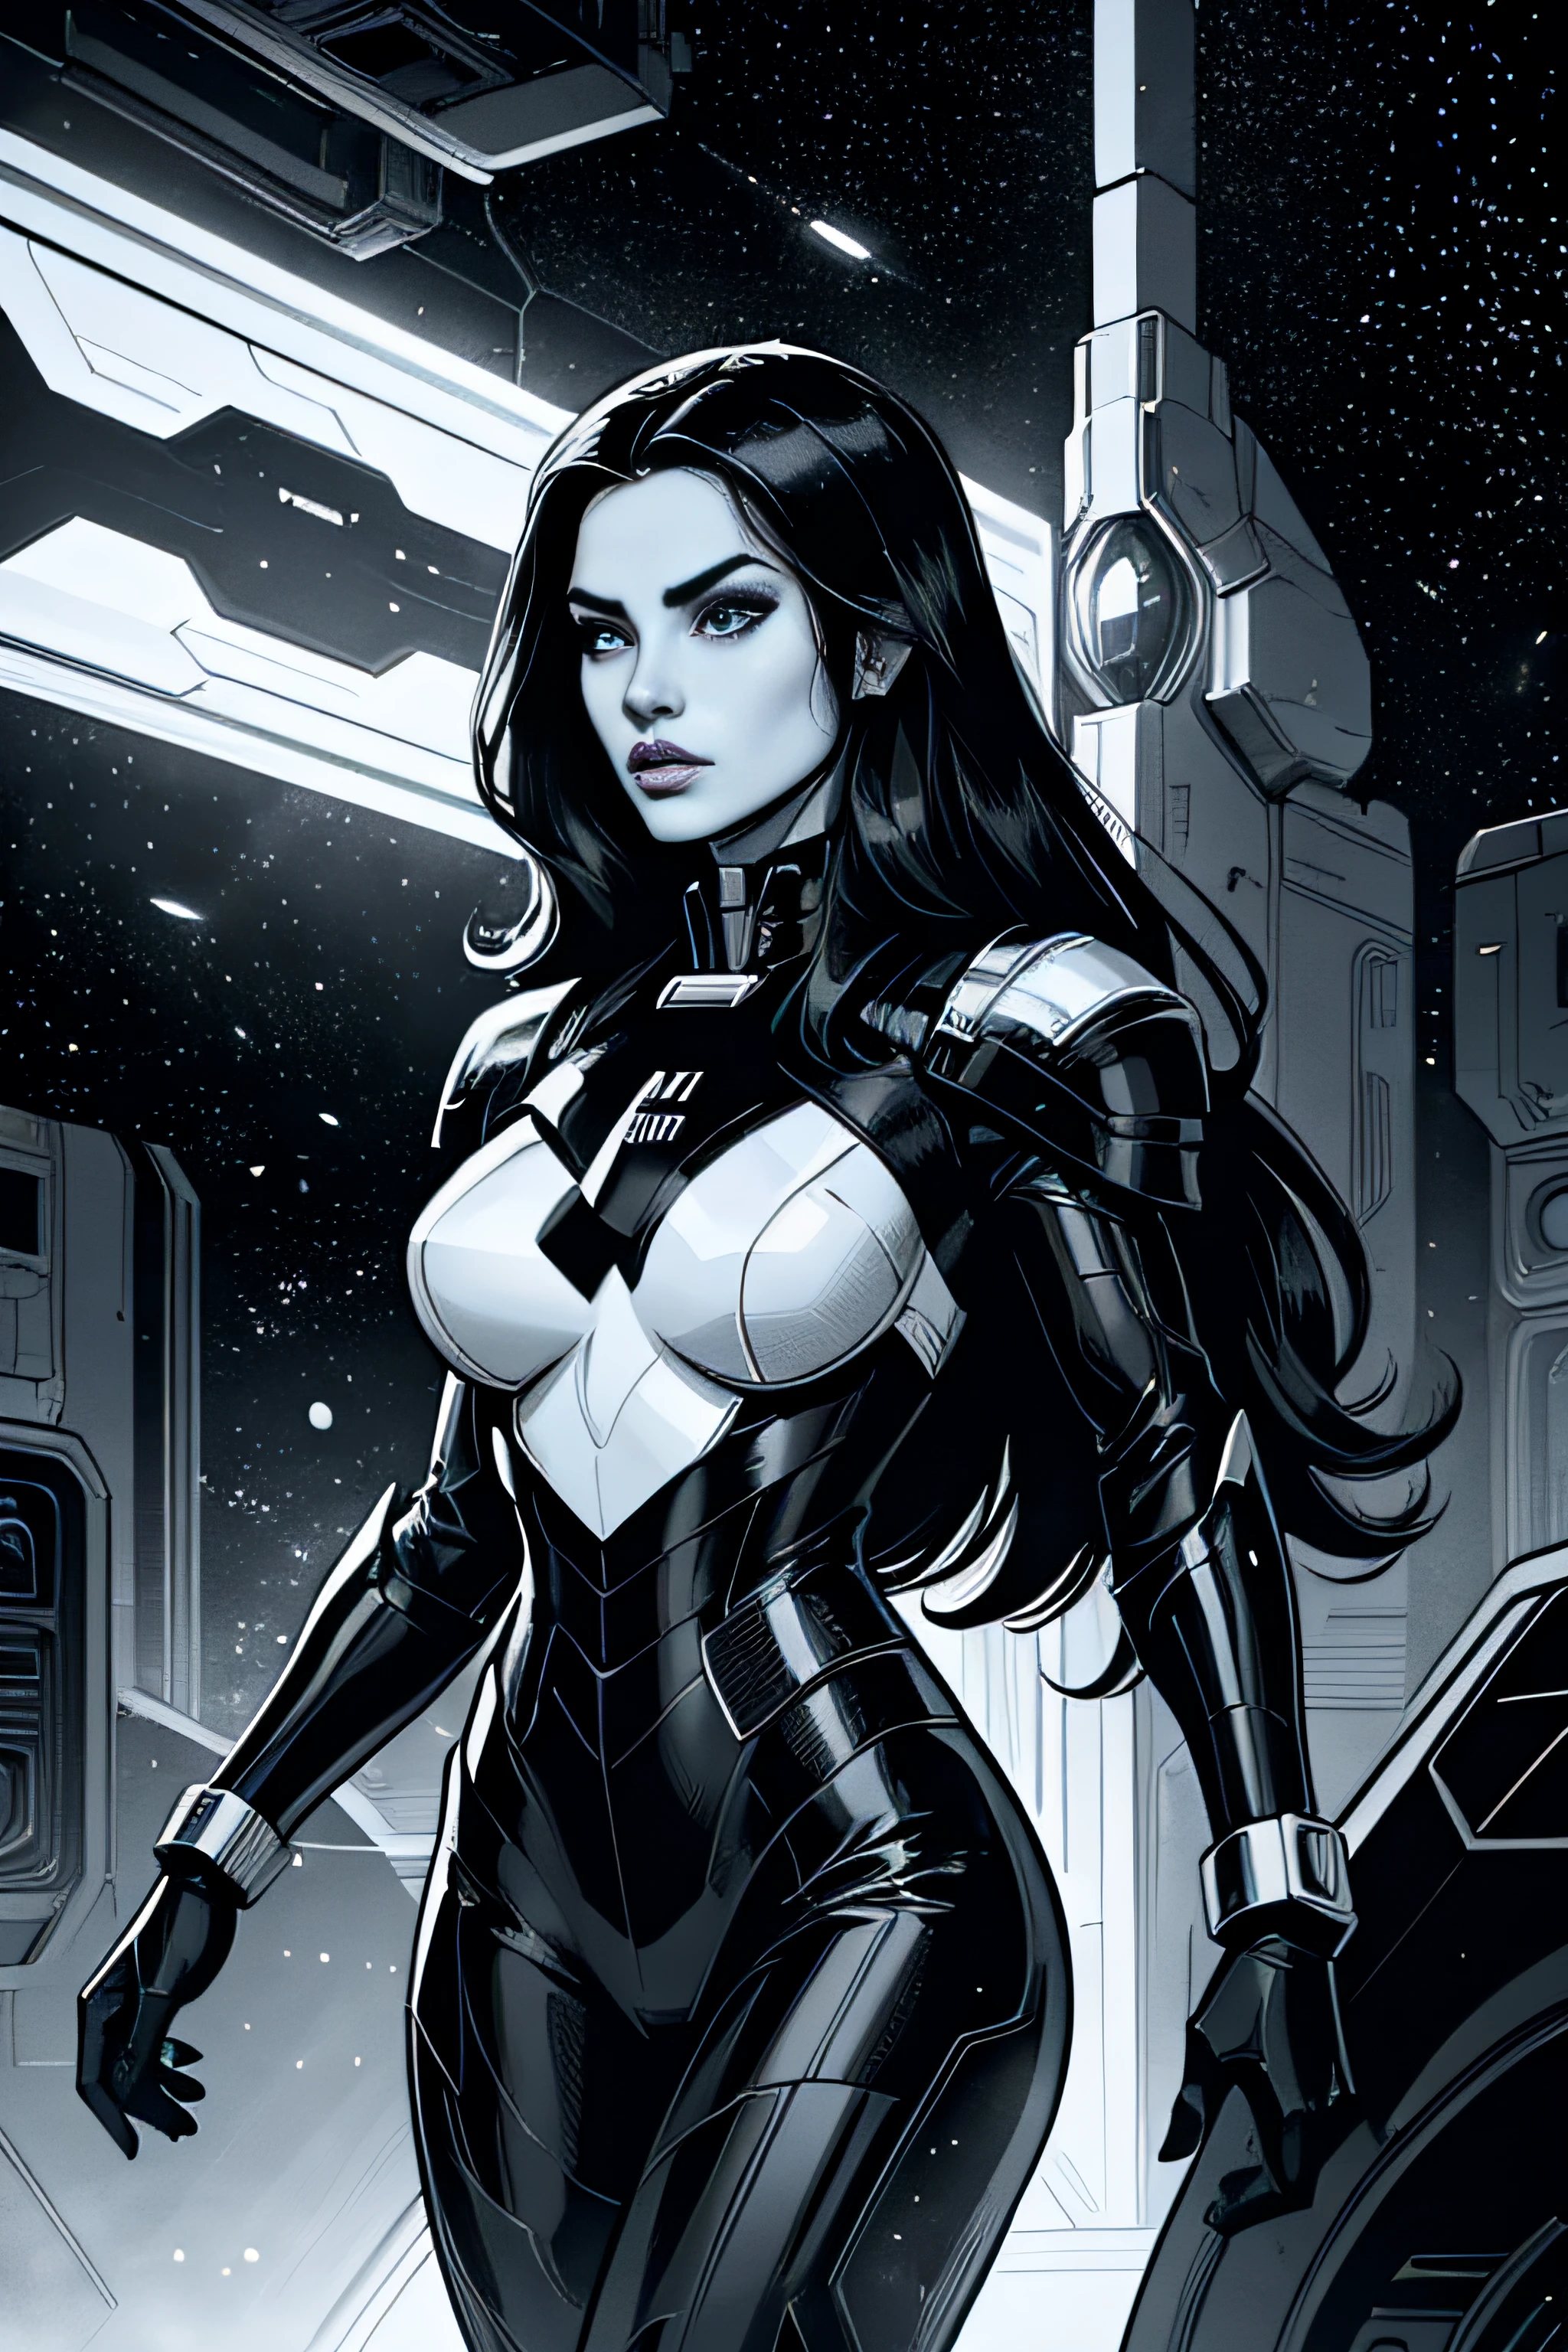 漫画艺术, 黑白艺术, 高对比度, 女人银河, 长发, 高科技装甲, 科幻太空飞船塞纳里奥